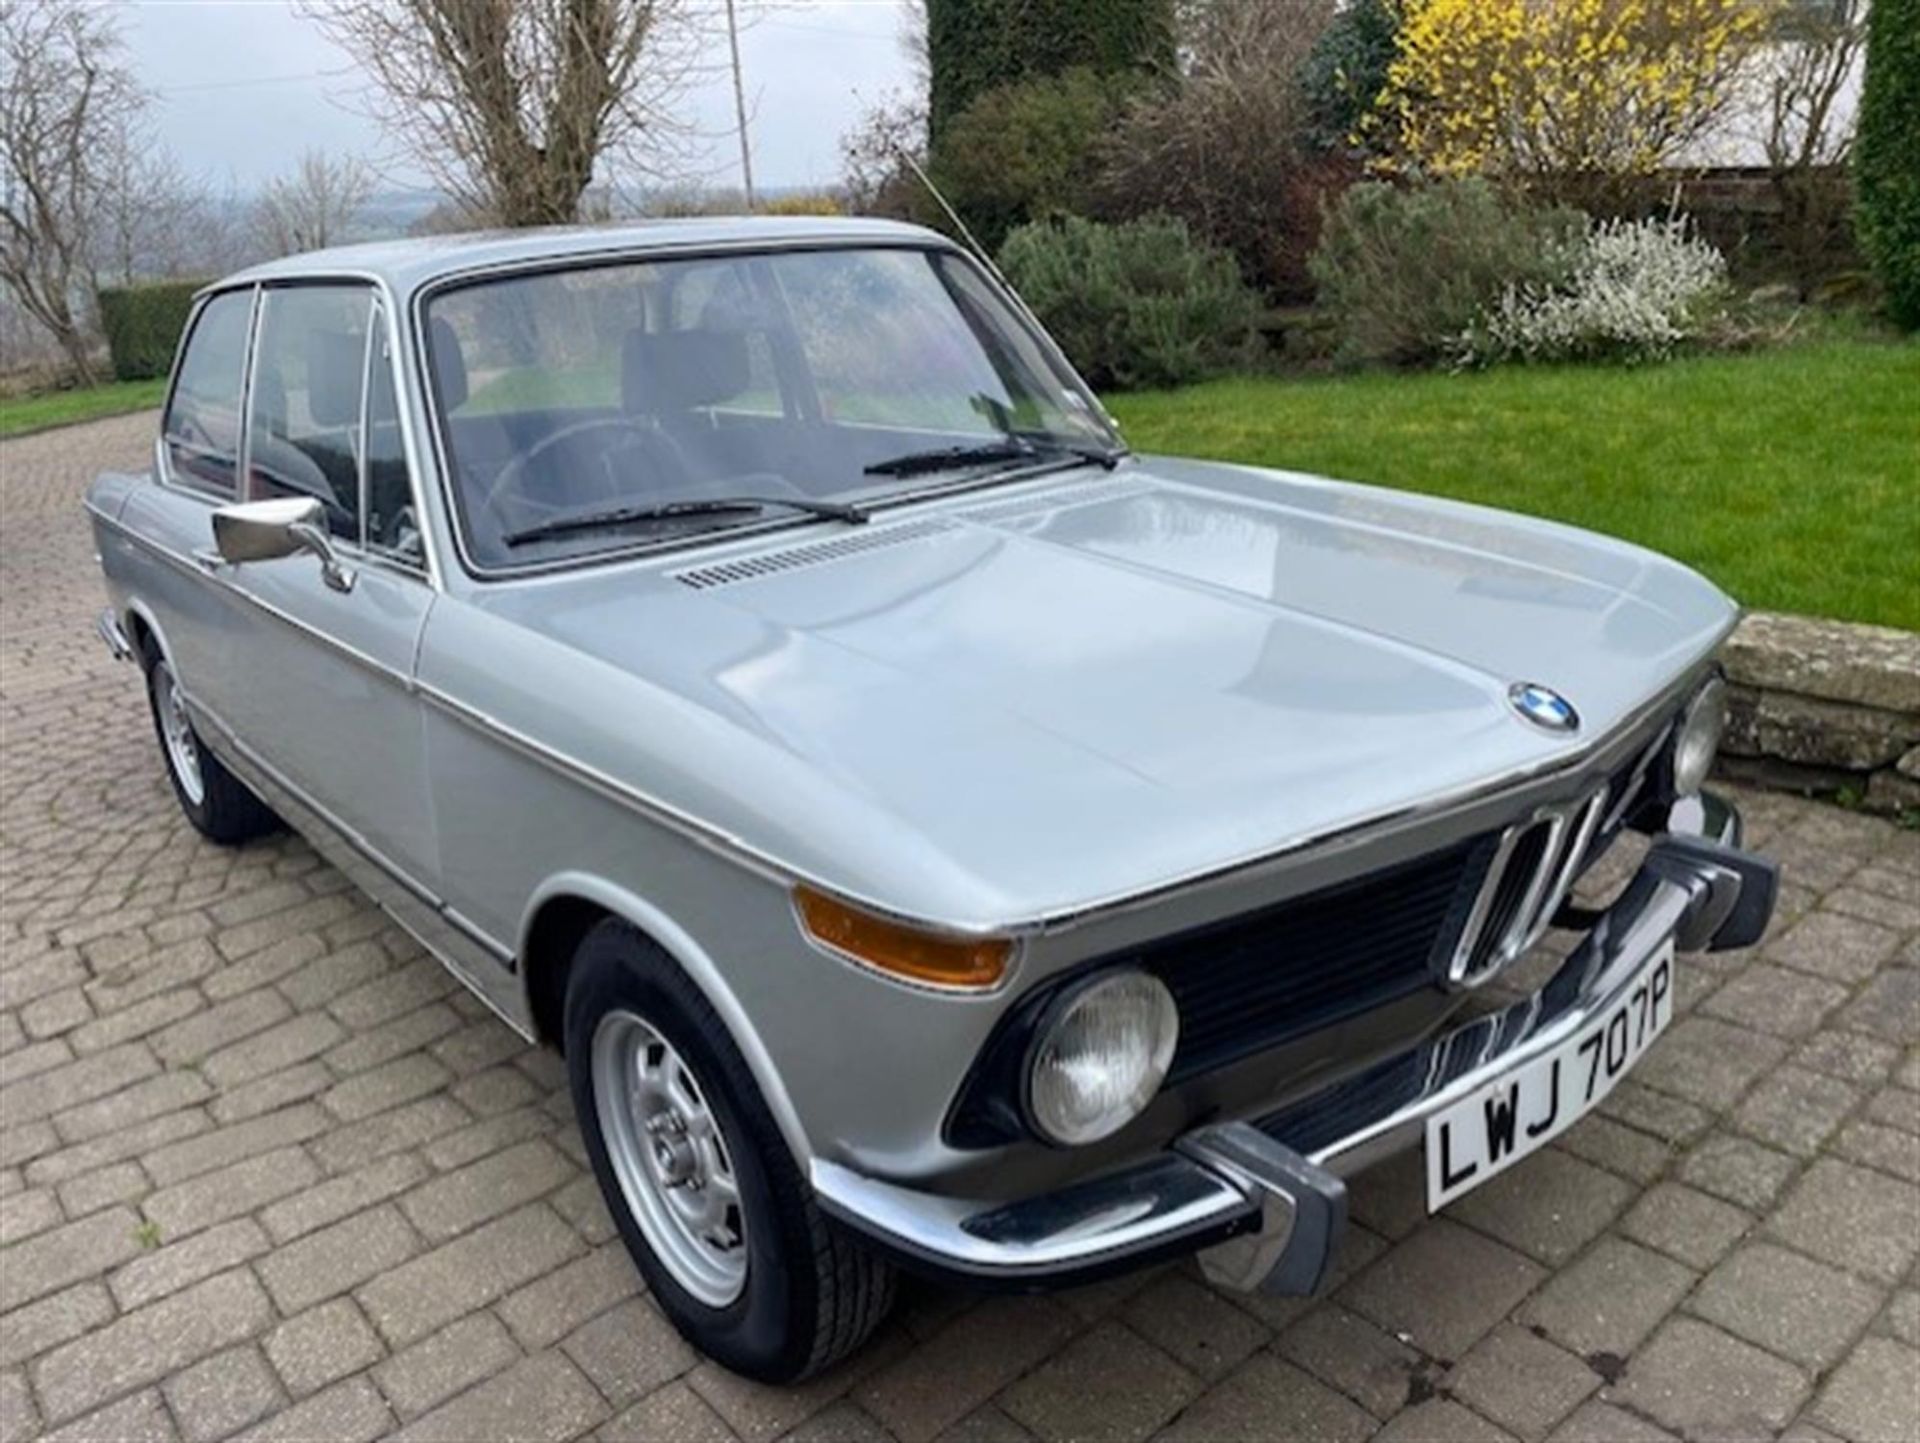 1976 BMW 2002 (E10/73)